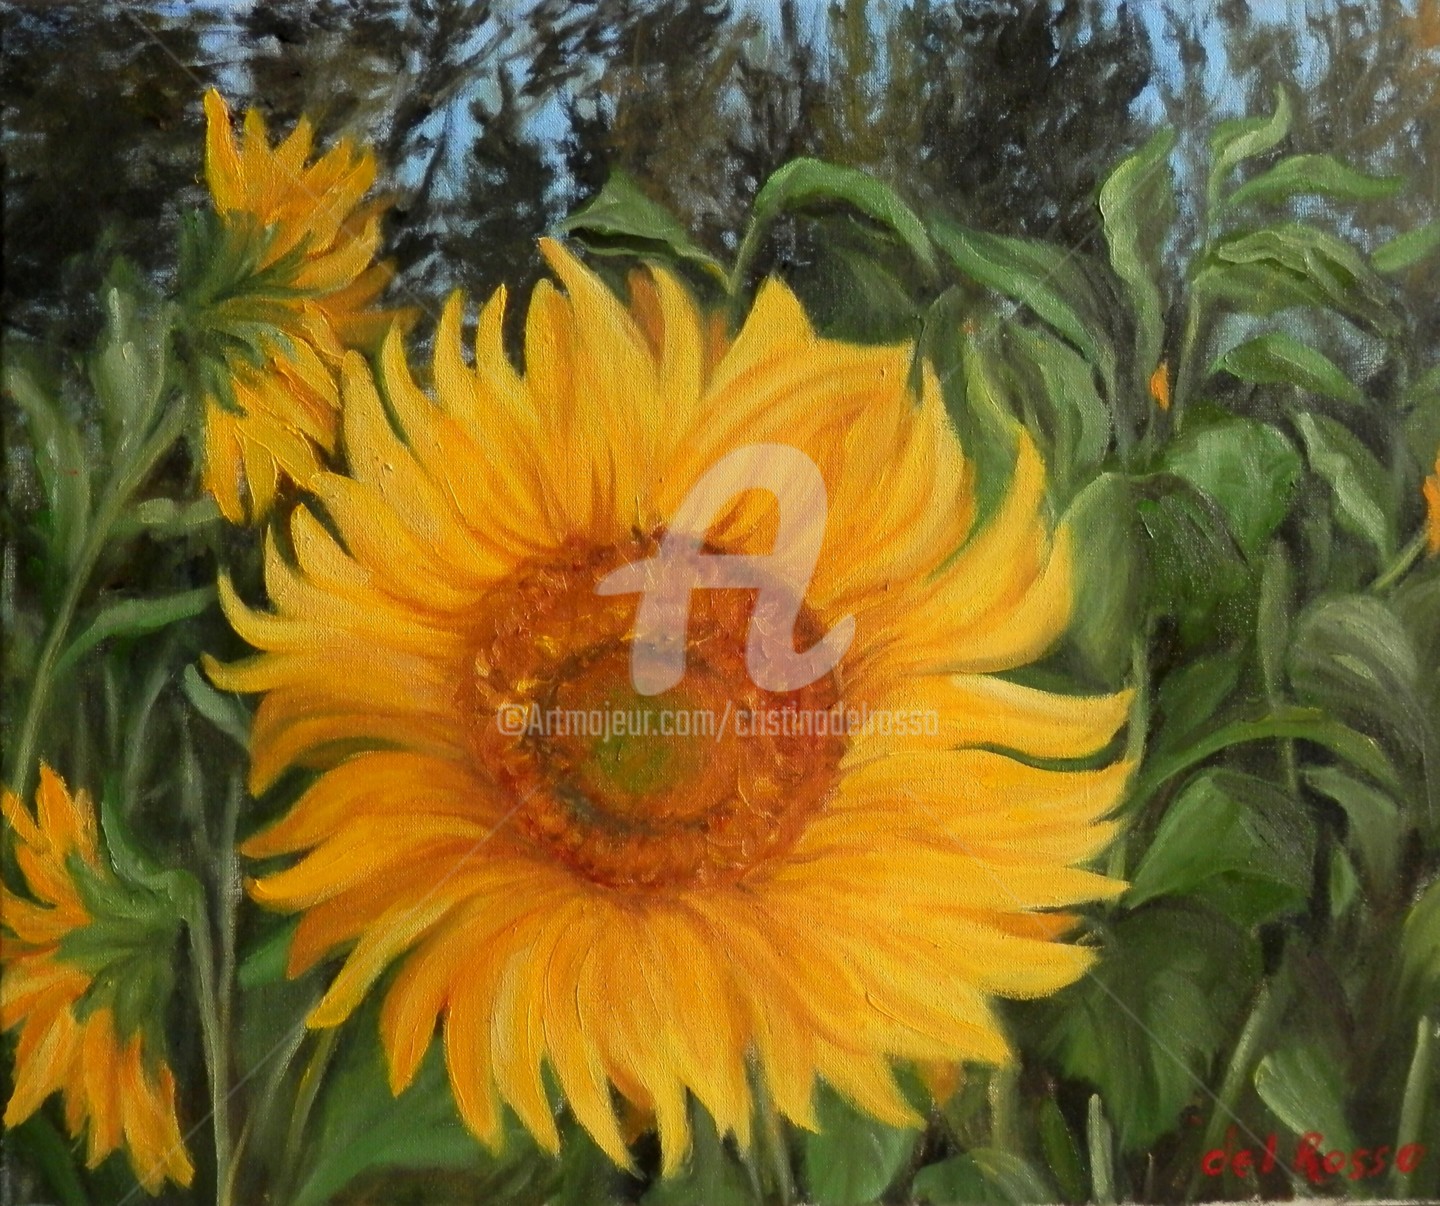 Cristina Del Rosso - Girasoles (Sunflowers)